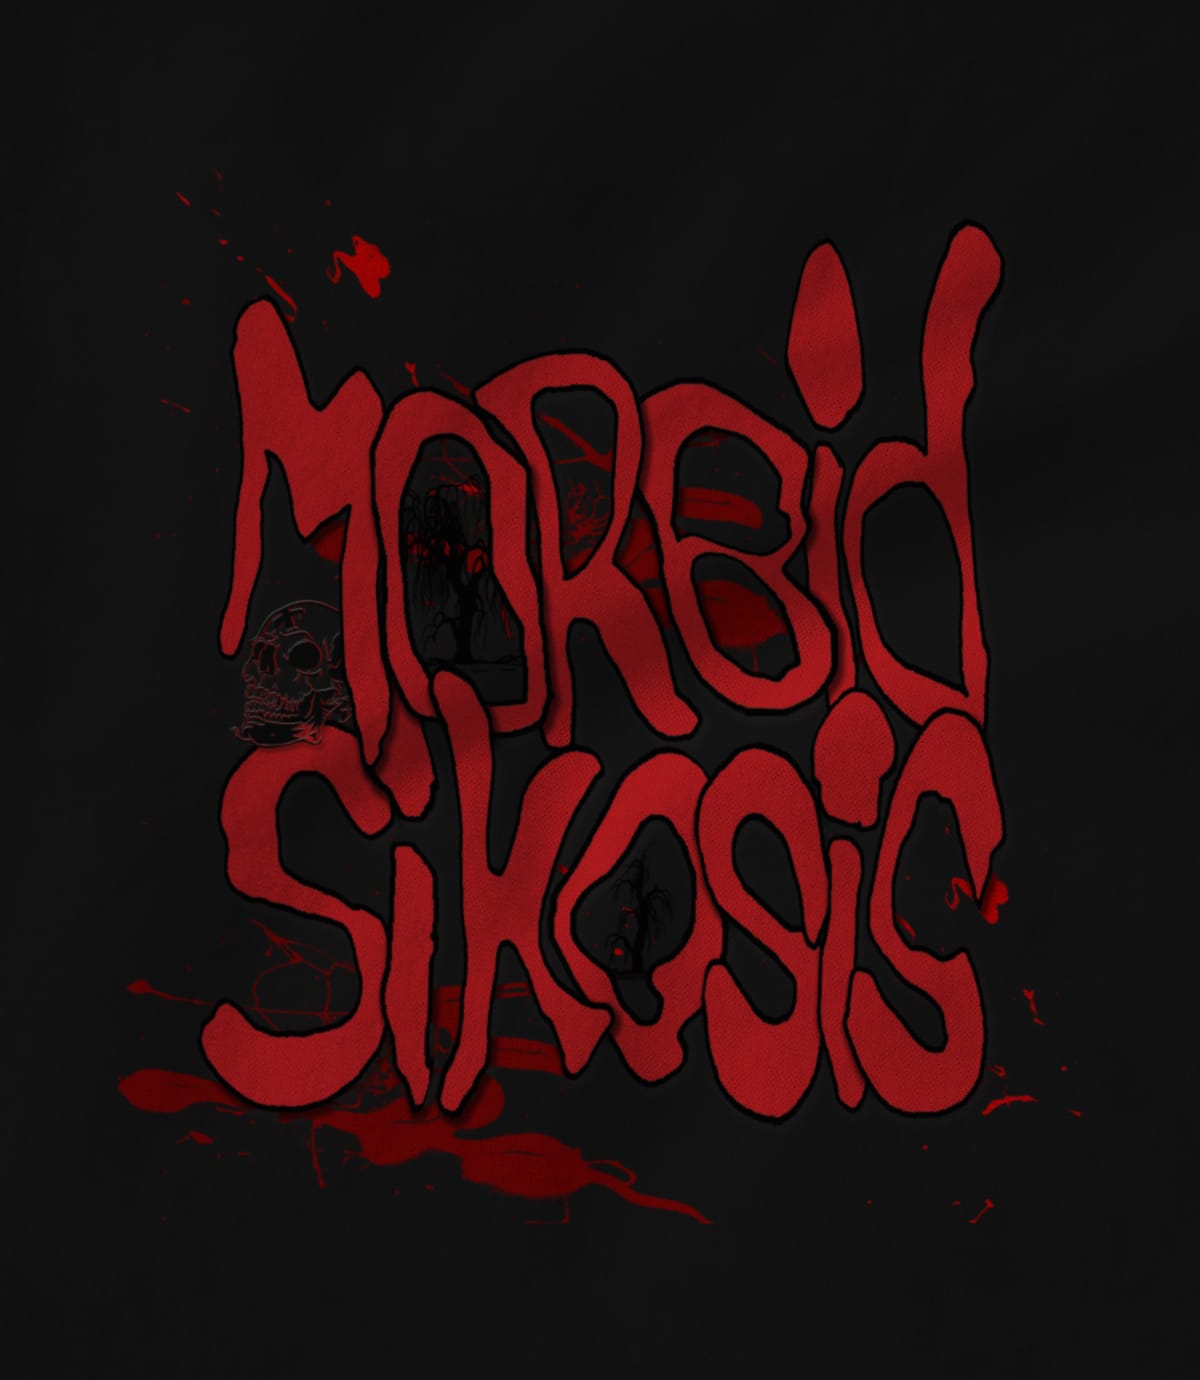 Morbid Sikosis